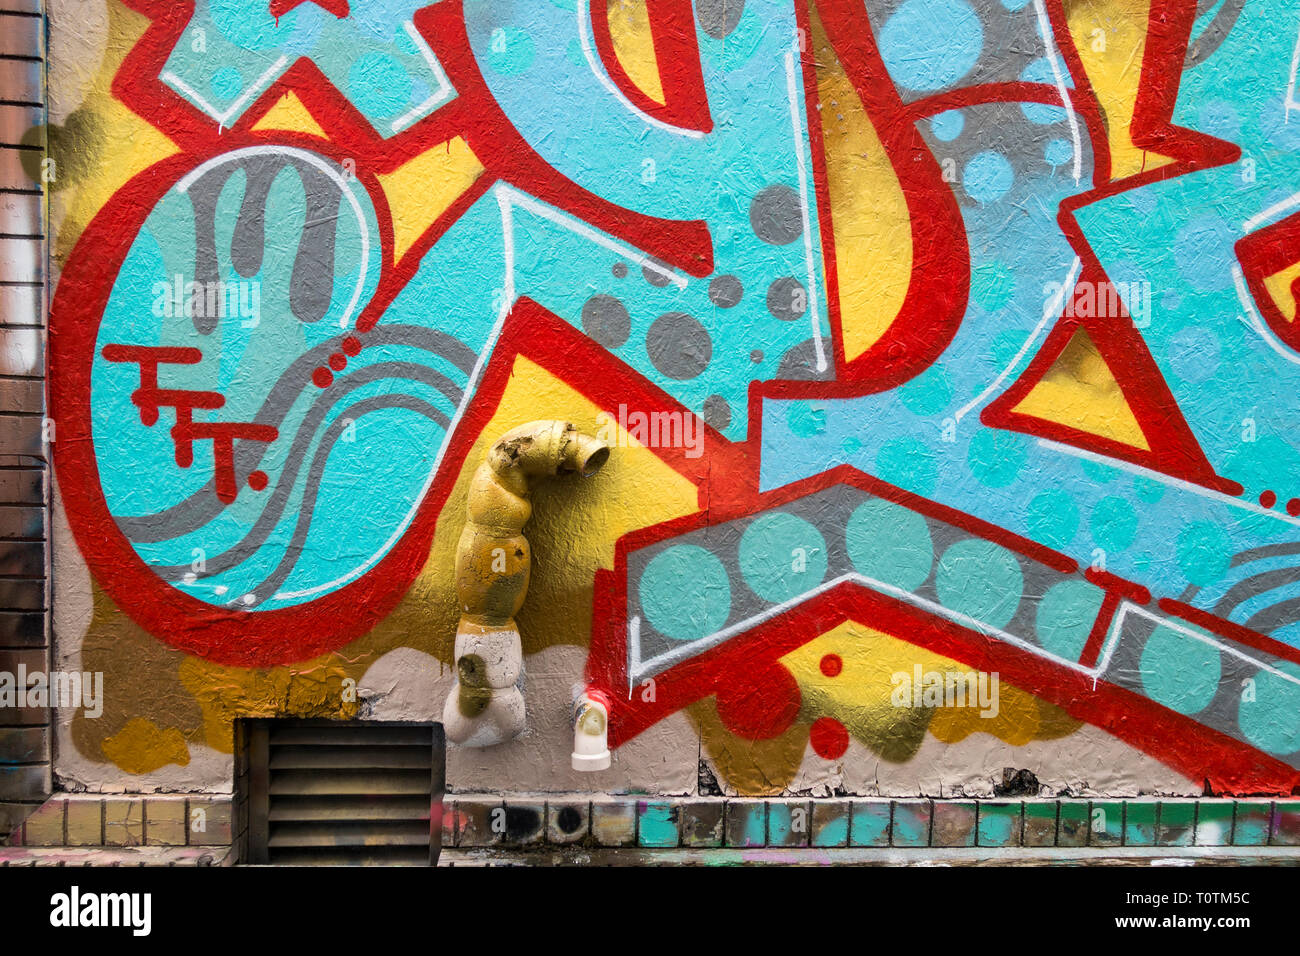 Eine große Anzahl von bunten Wandmalereien, die eine kleine touristische Attraktion haben in einem Bereich als Graffiti Gasse in Toronto Ontario Kanada bekannt geworden Stockfoto